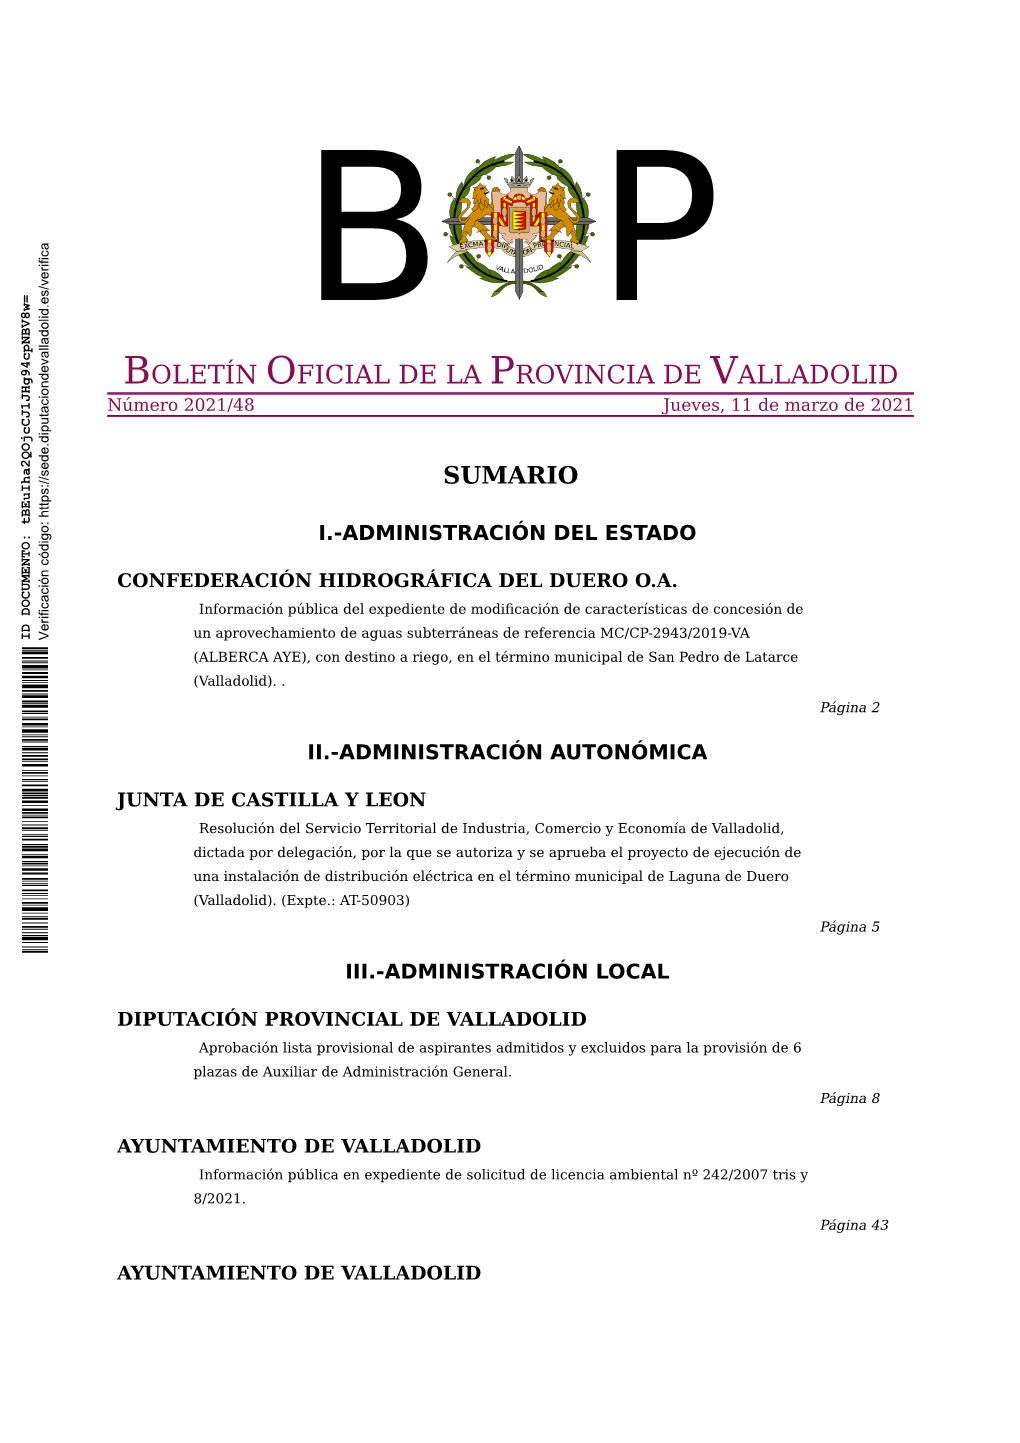 BOLETÍN OFICIAL DE LA PROVINCIA DE VALLADOLID Número 2021/48 Jueves, 11 De Marzo De 2021